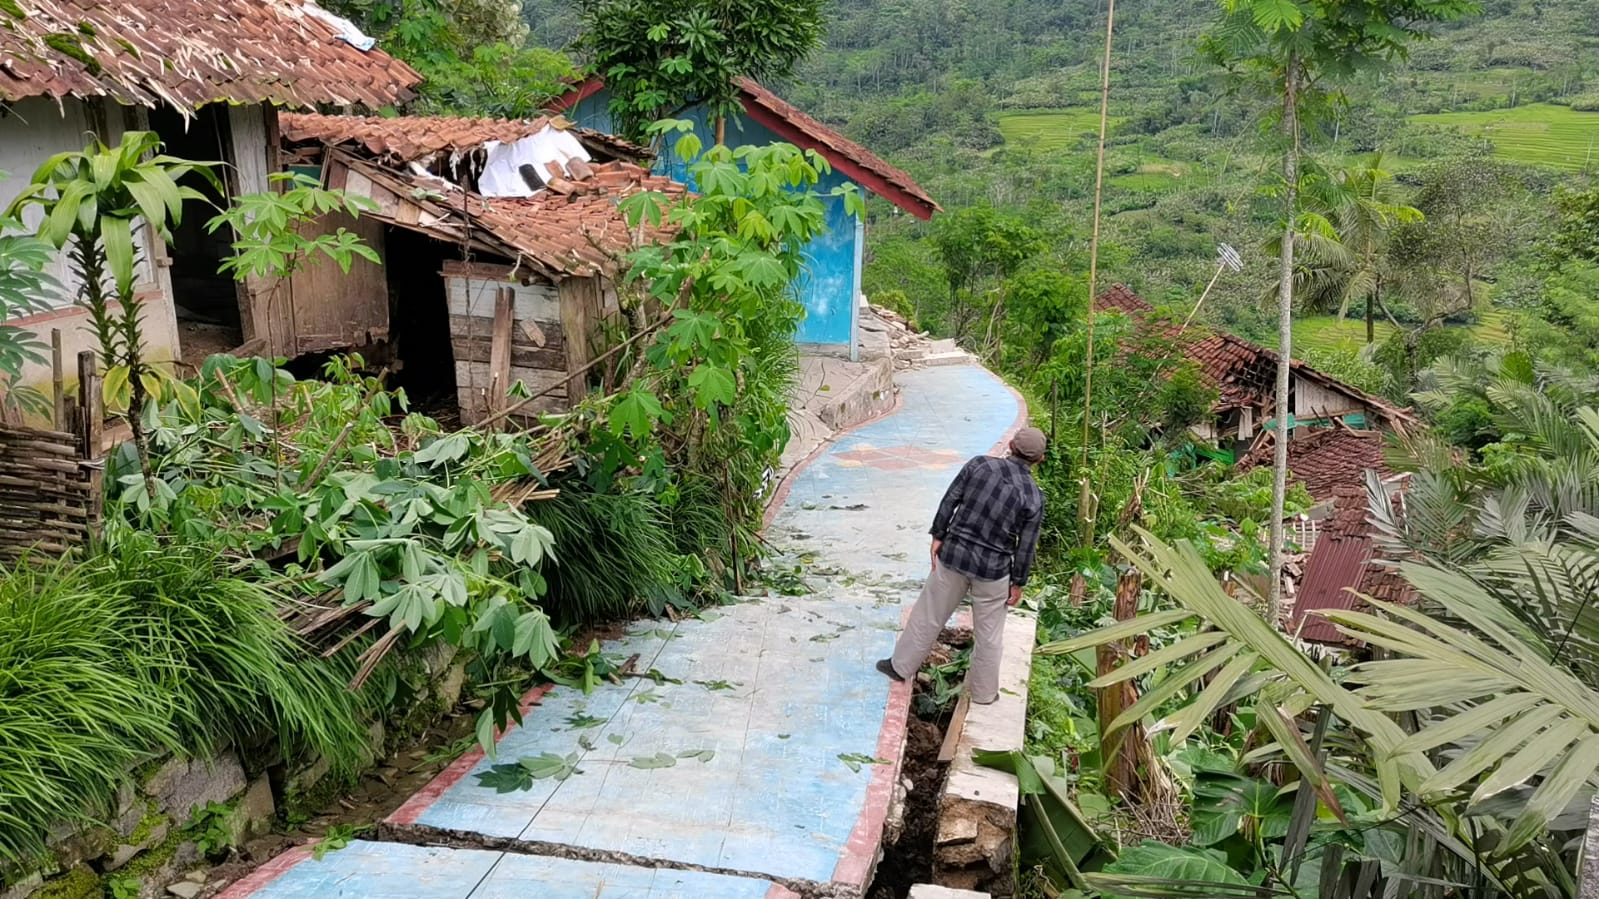 10 Rumah di Banjarnegara Hancur Rata dengan Tanah Akibat Tanah Gerak, 14 Rumah Lainnya Membahayakan